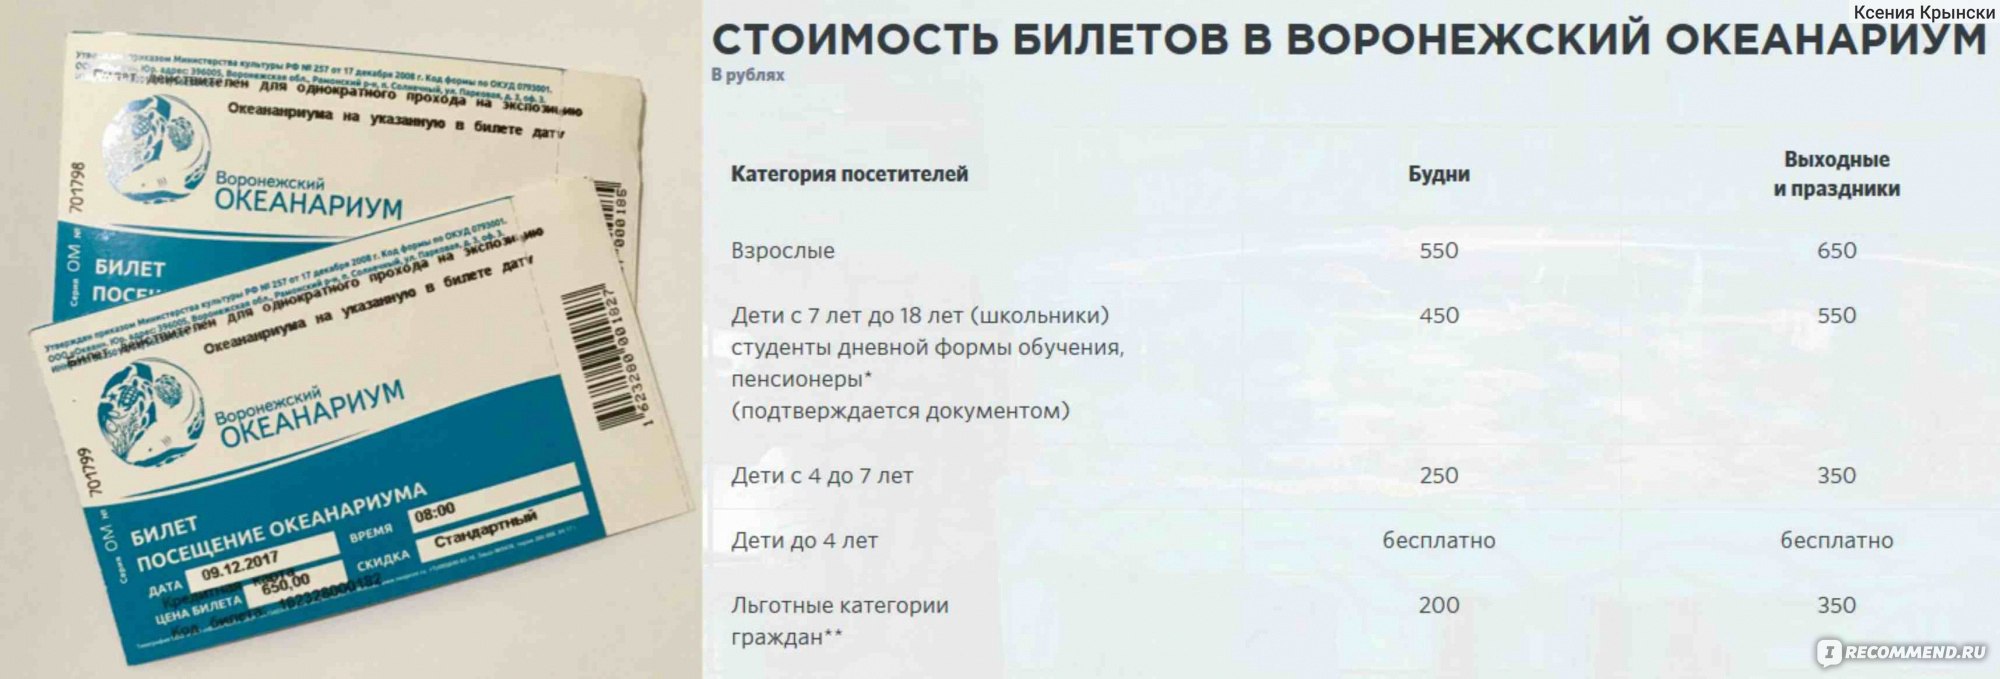 Билет в океанариум Воронеж